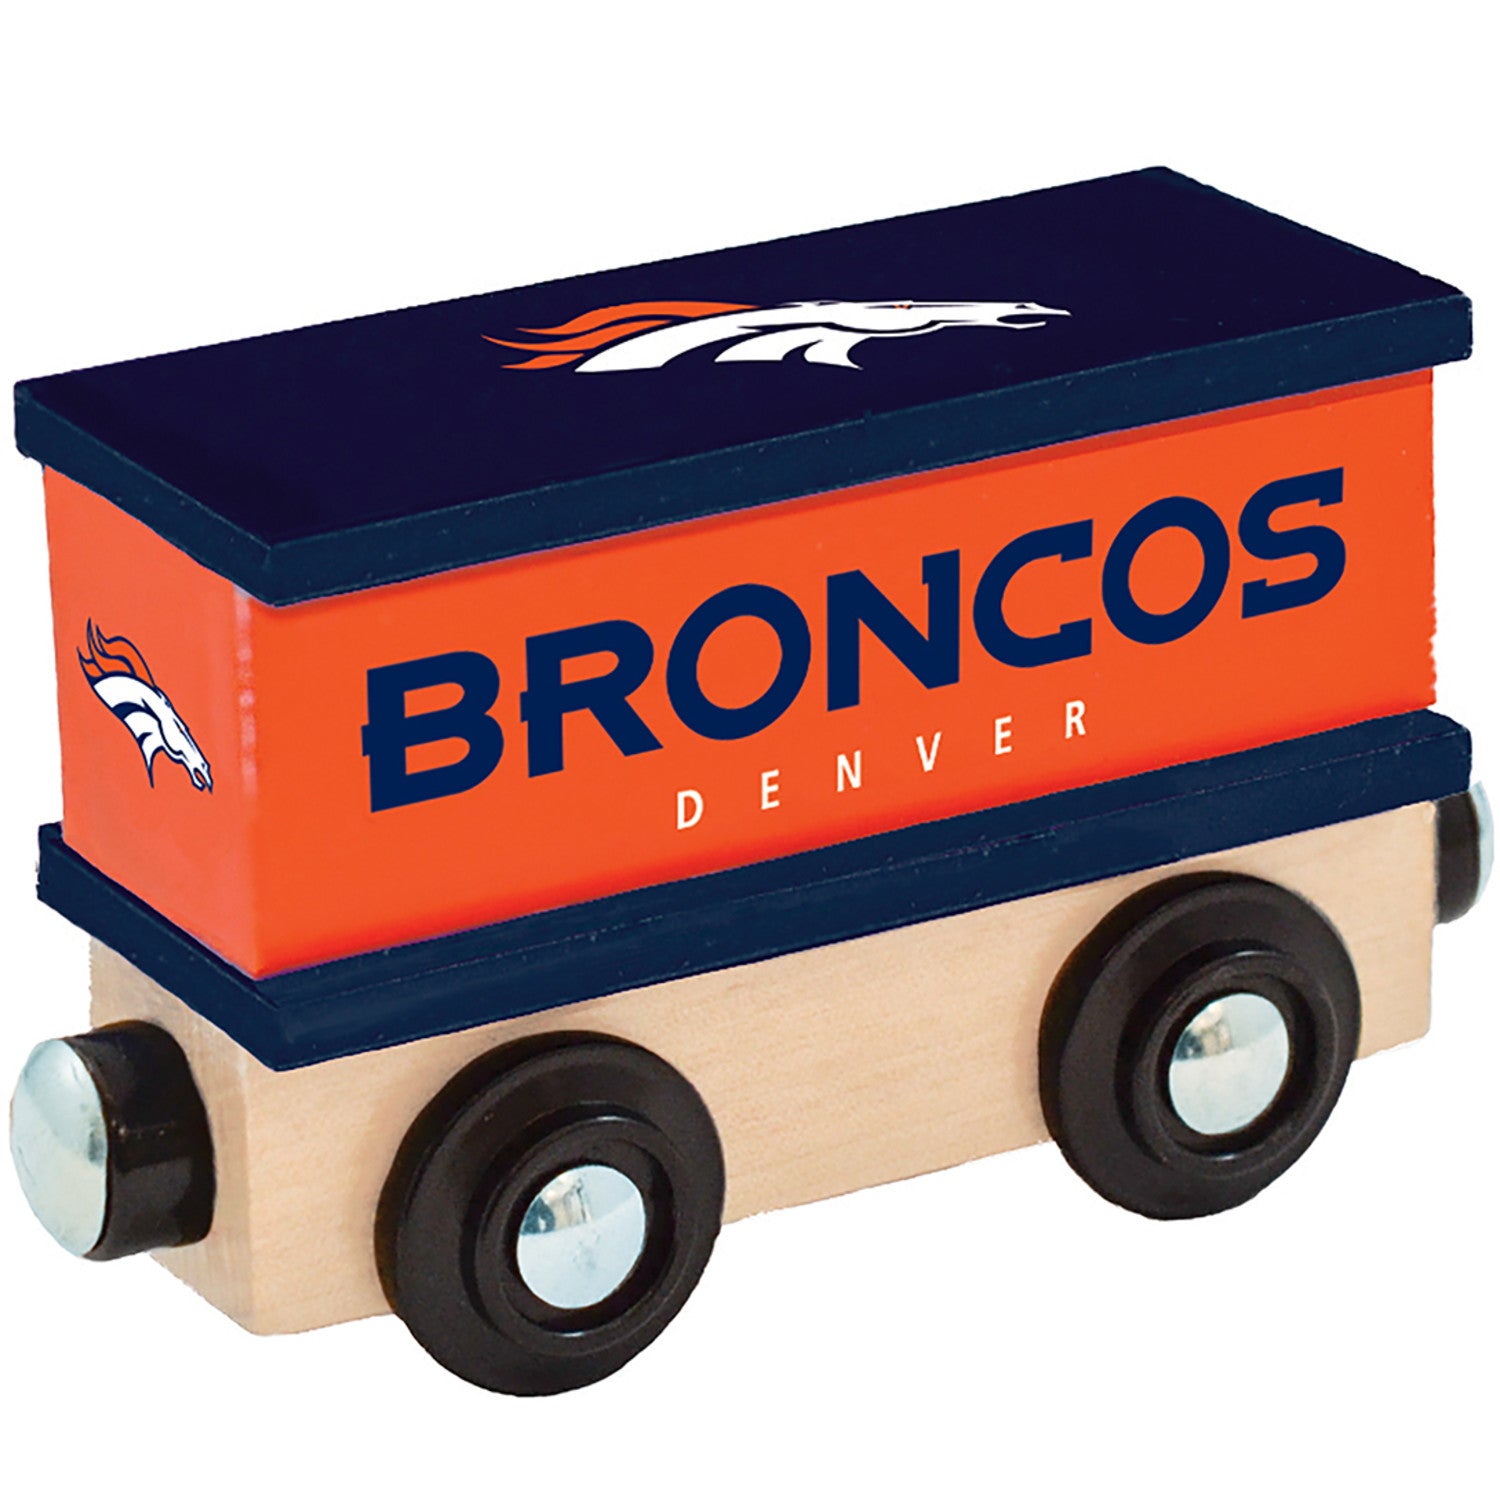 Denver Broncos Toy Train Box Car